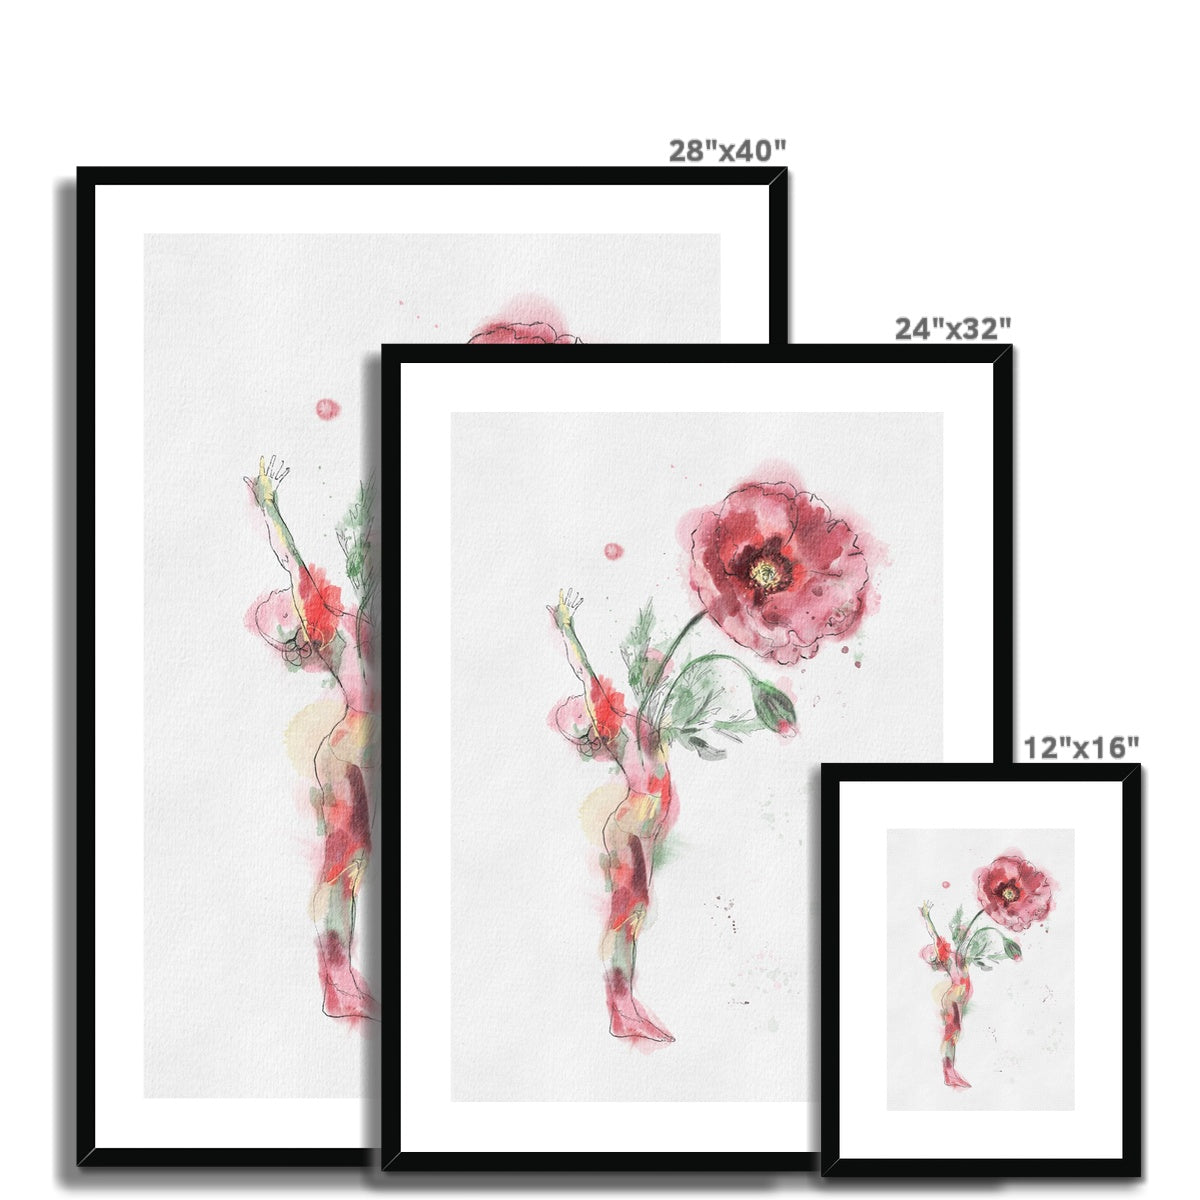 Yoga Flower Poppy- Framed & Mounted Print